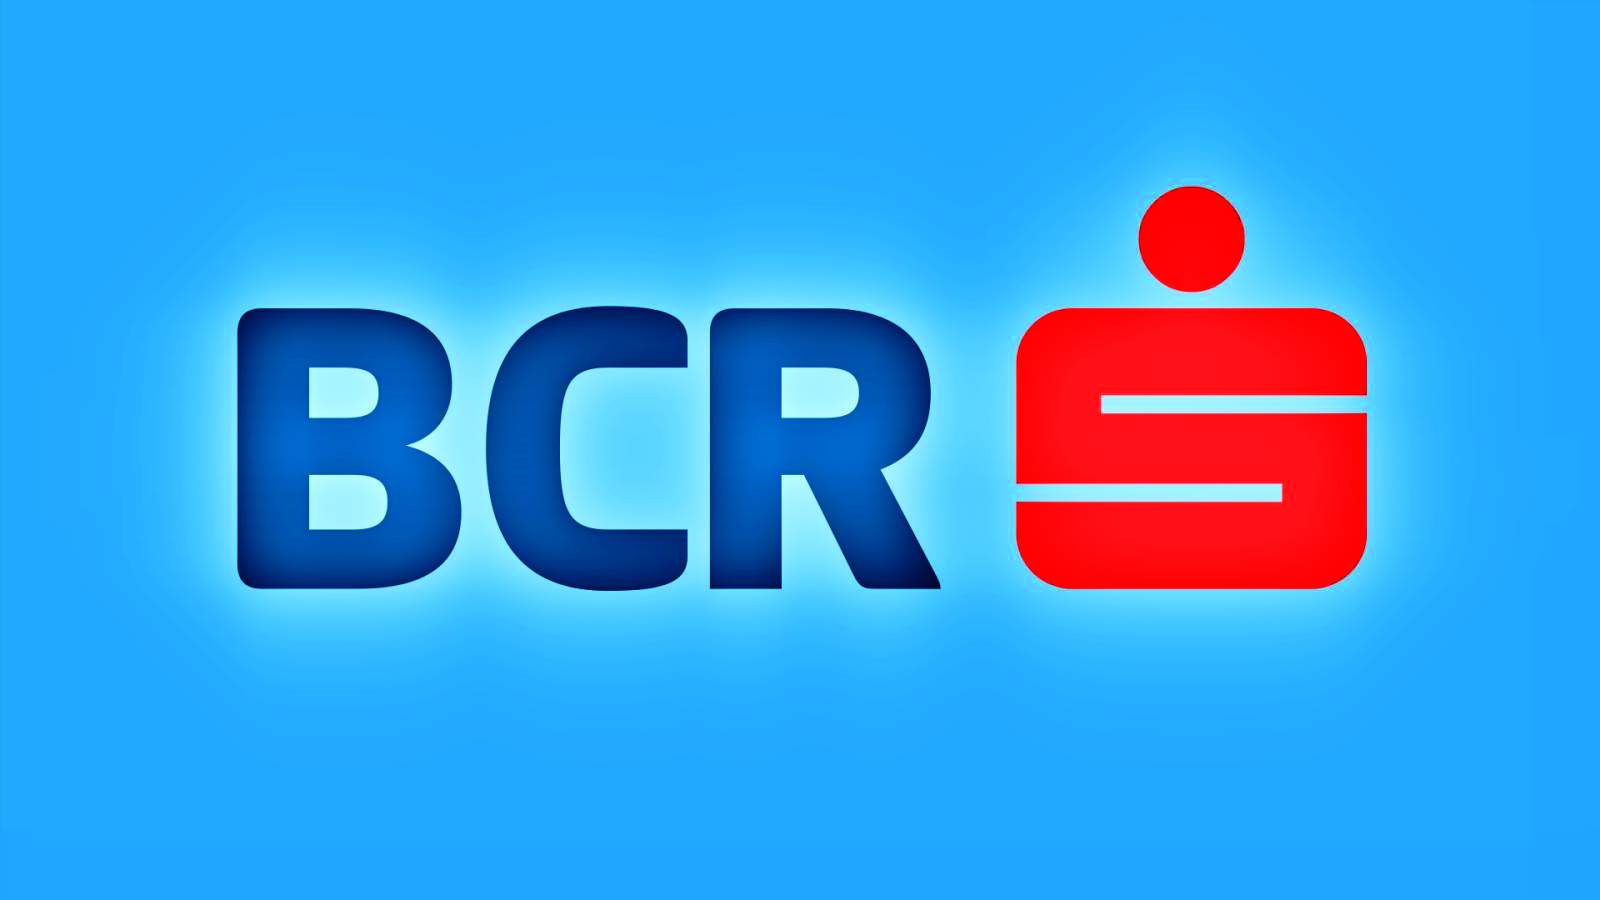 BCR Romania selectie